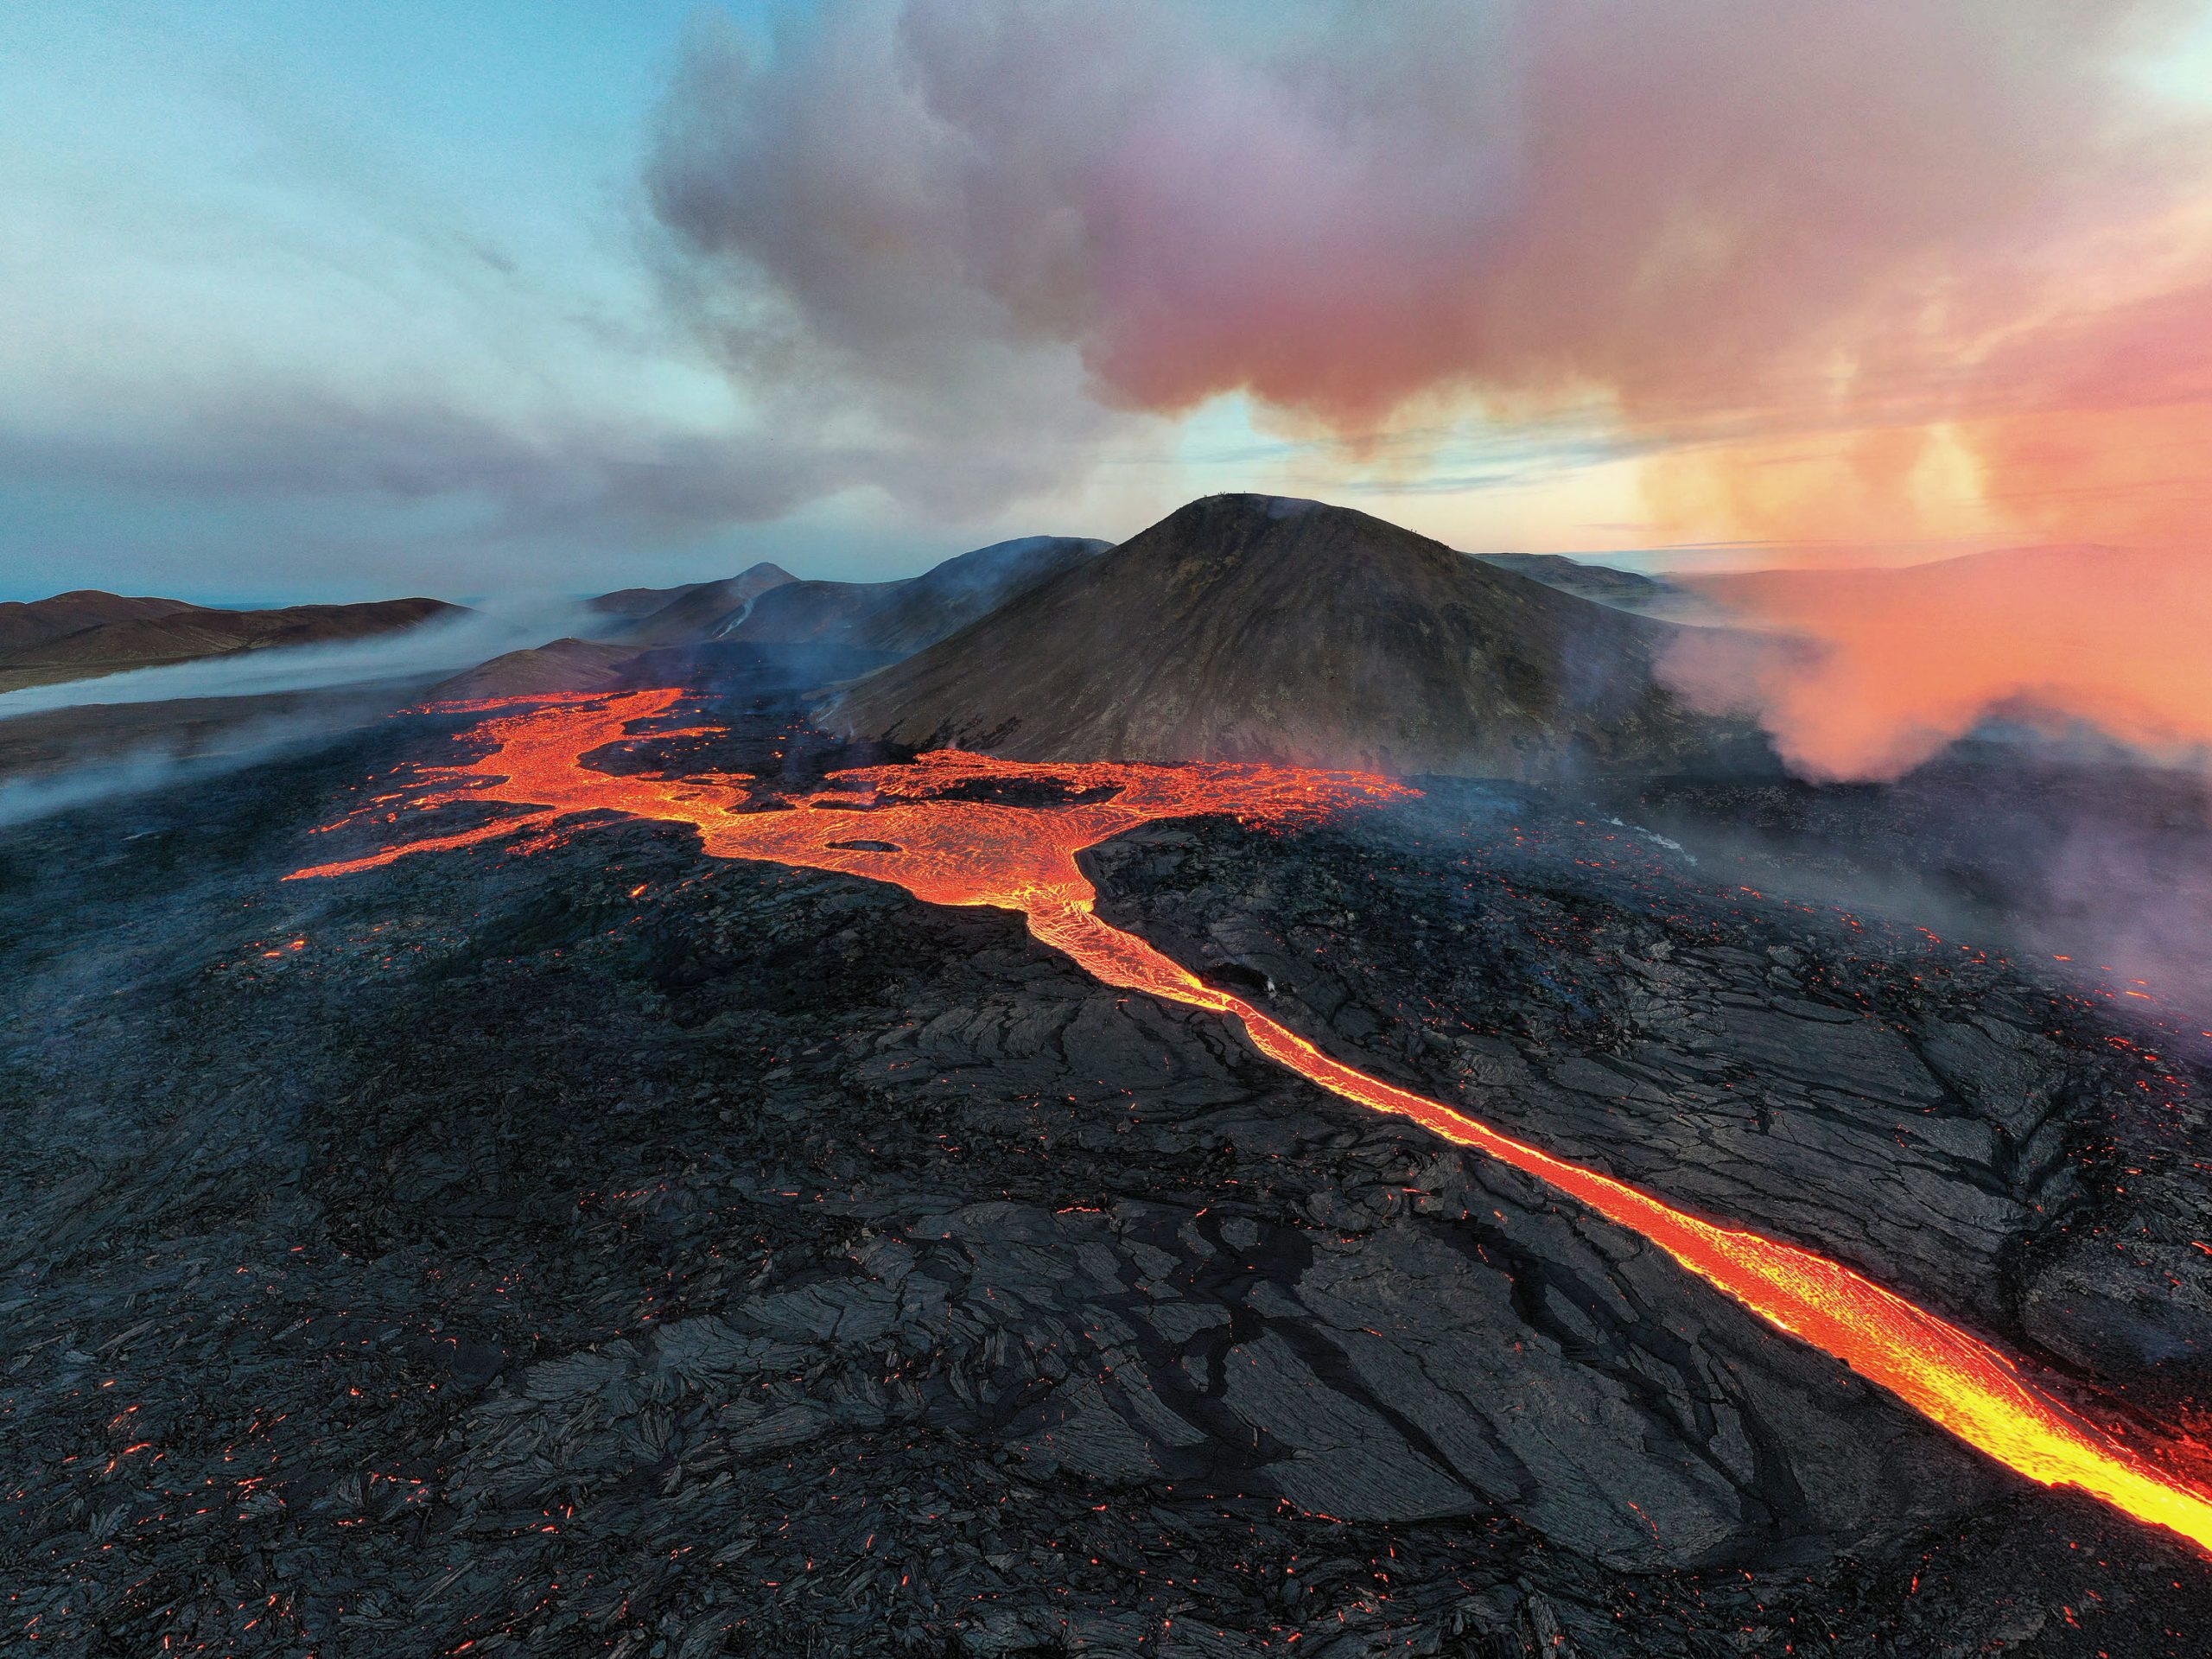 Drohnenfoto eines Vulkans von Raffaele Cabras Keller (c) Raffaele Cabras Keller / Skylum